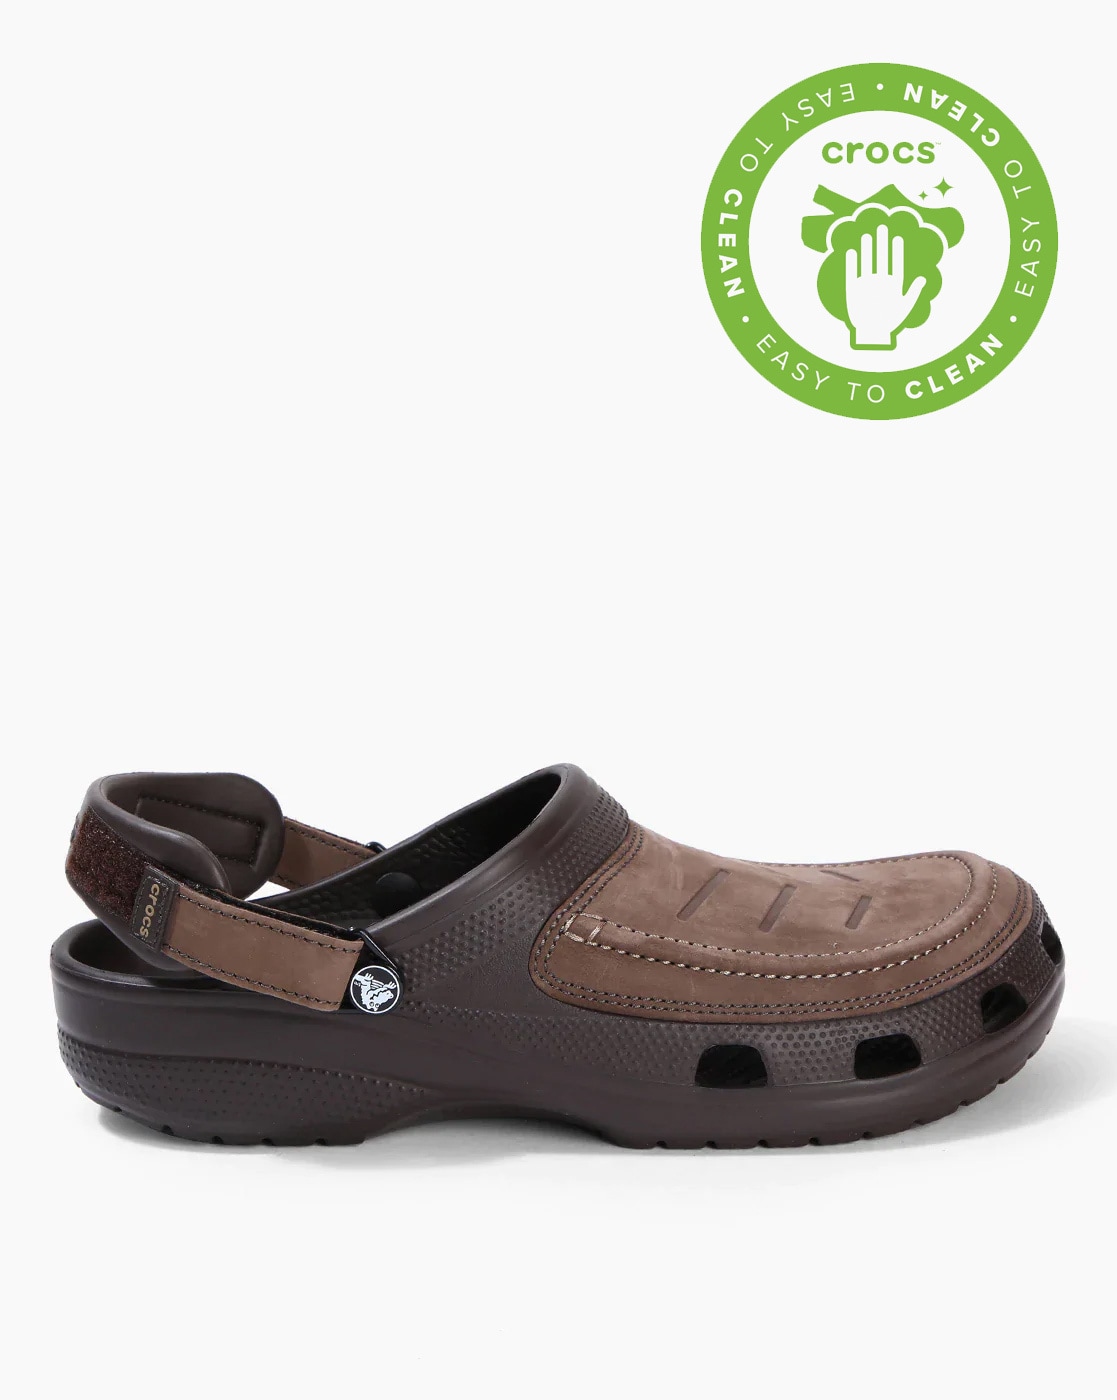 brown crocs for men